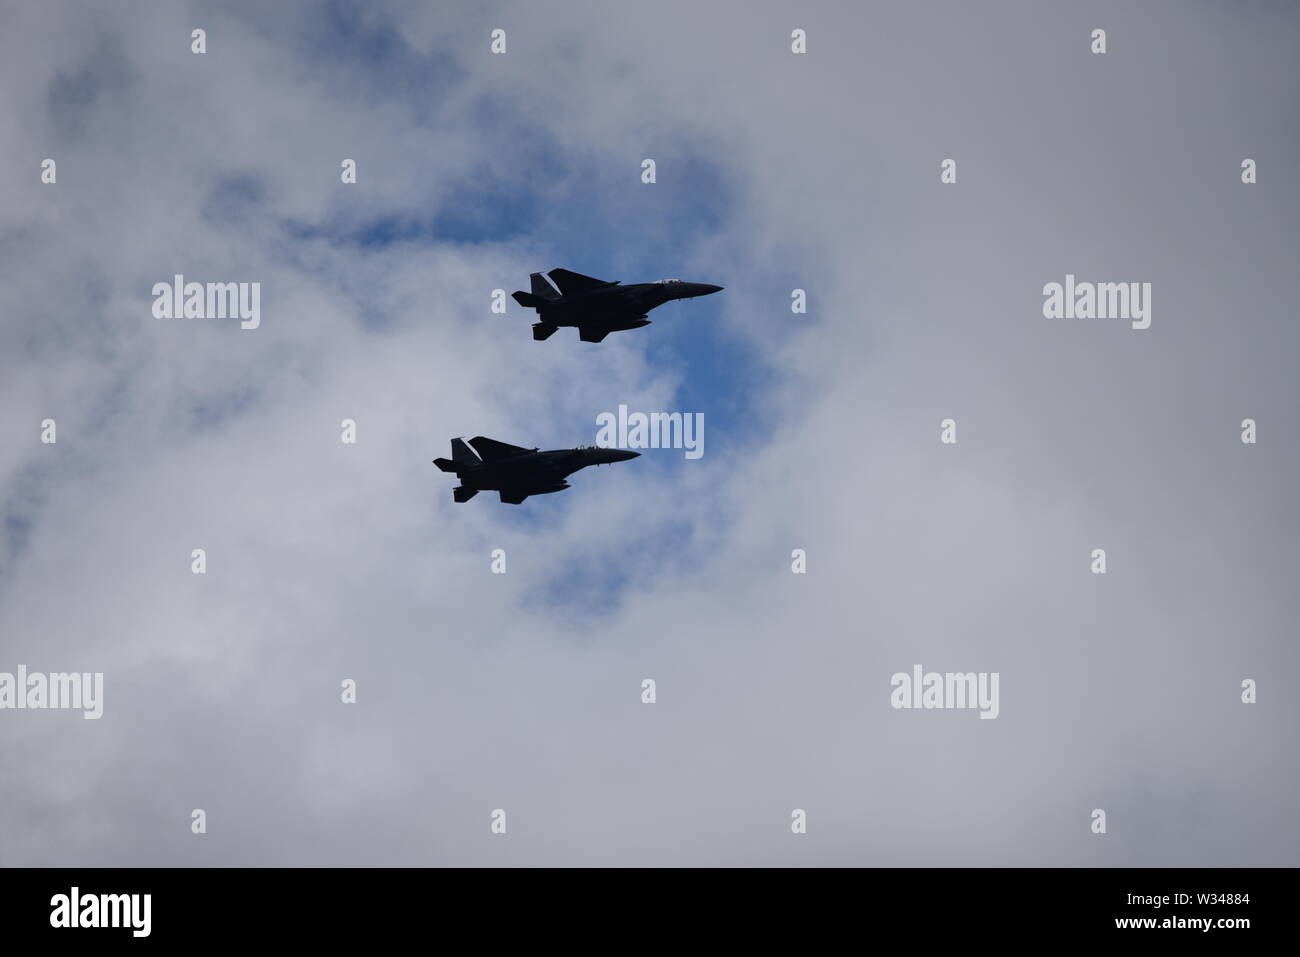 Paar F15 Eagle US-jet Kampfflugzeuge in der Ferne vor einem dunklen Grau bewölkter Himmel fliegen Stockfoto